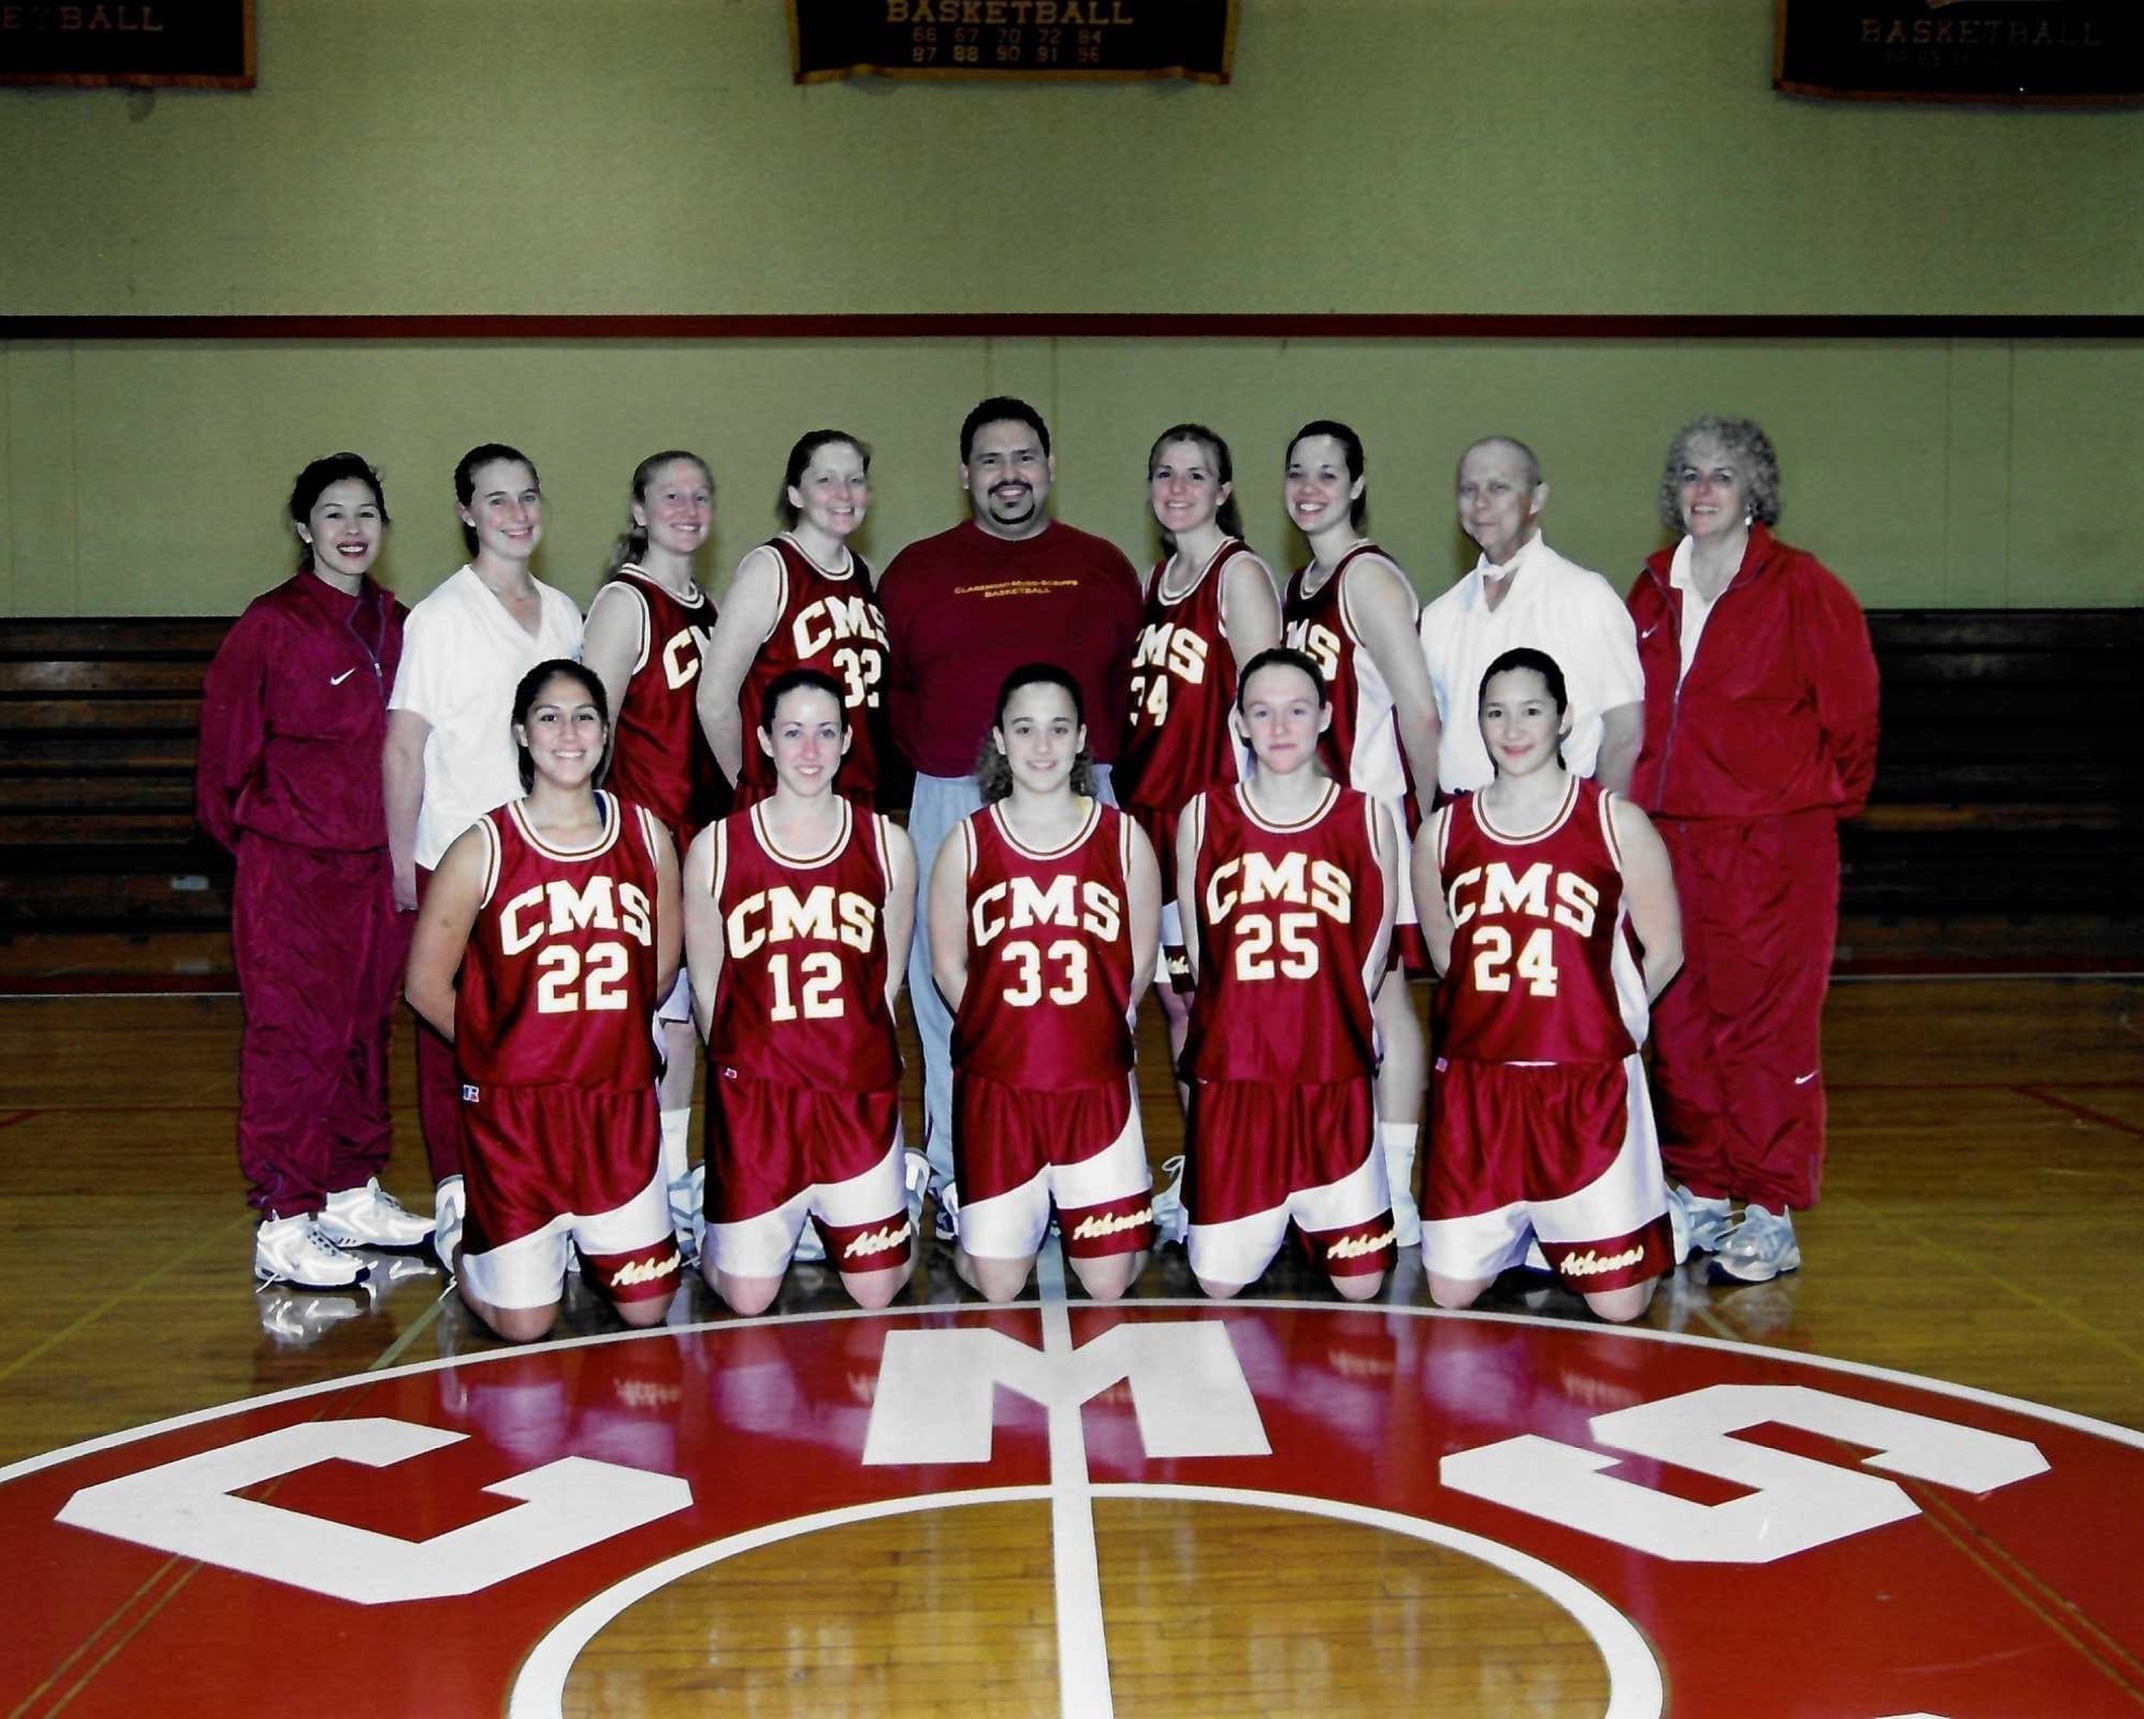 2000-01 CMS women's basketball team